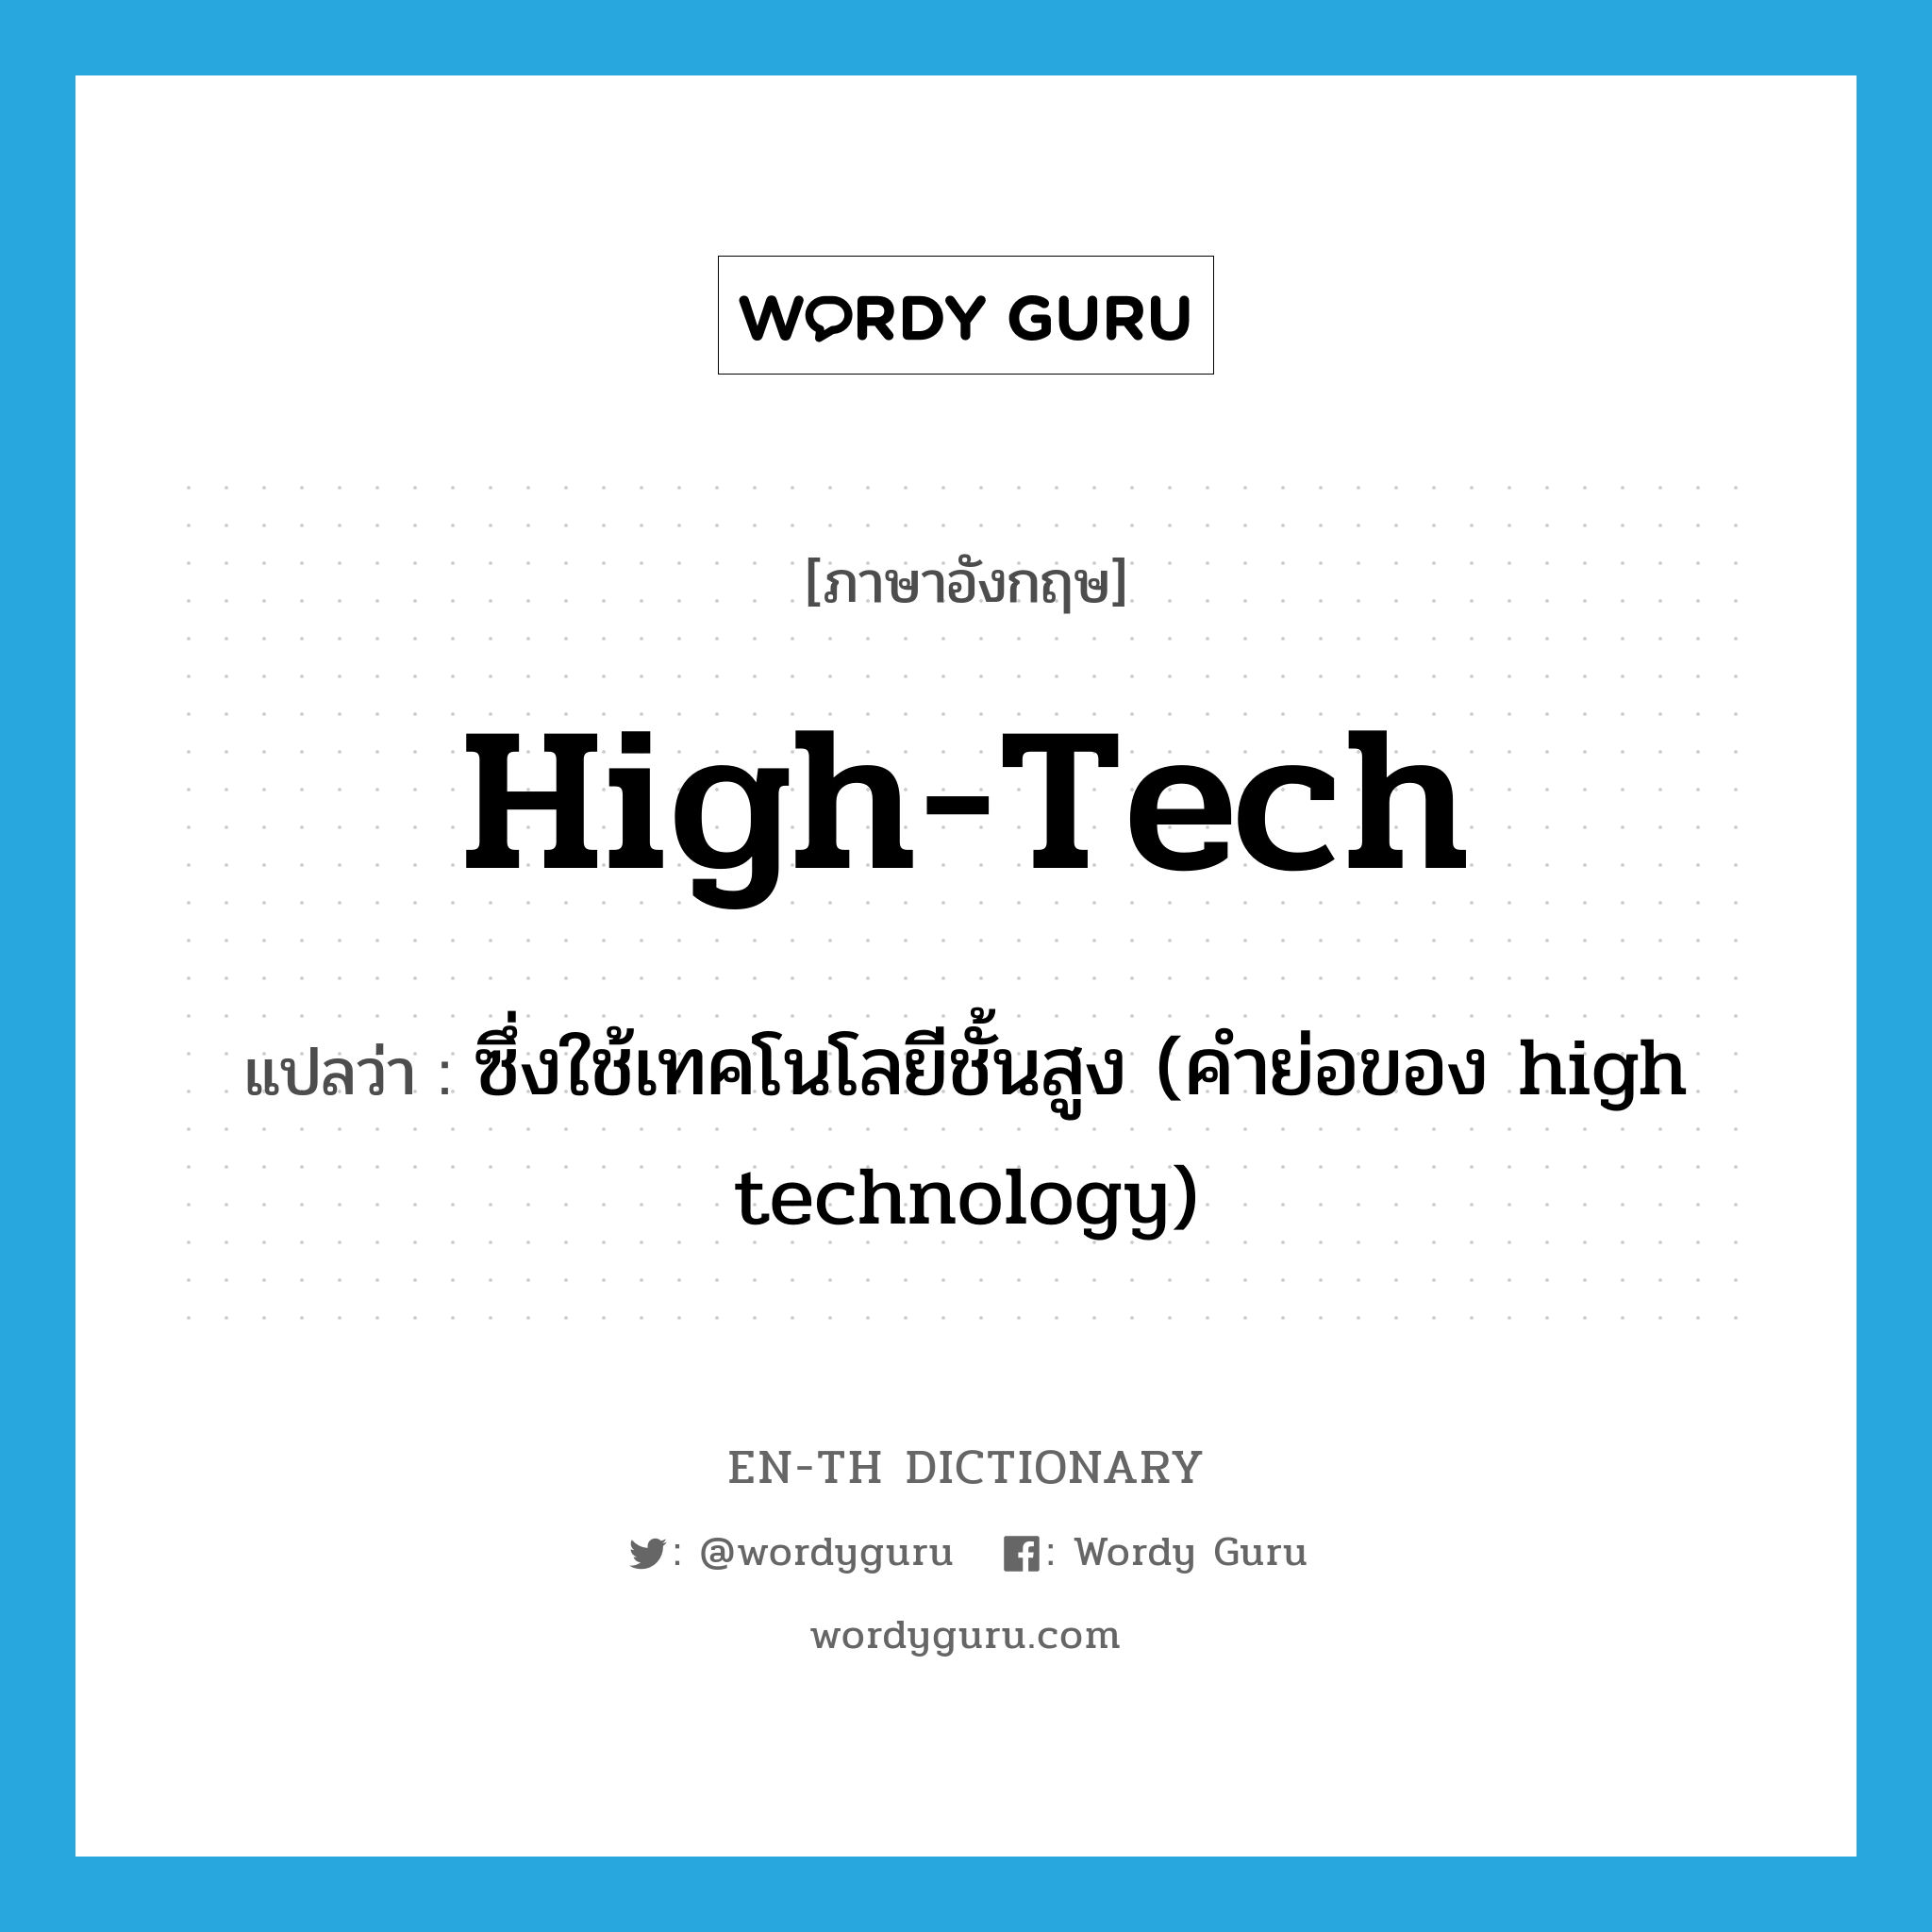 ซึ่งใช้เทคโนโลยีชั้นสูง (คำย่อของ high technology) ภาษาอังกฤษ?, คำศัพท์ภาษาอังกฤษ ซึ่งใช้เทคโนโลยีชั้นสูง (คำย่อของ high technology) แปลว่า high-tech ประเภท ADJ หมวด ADJ